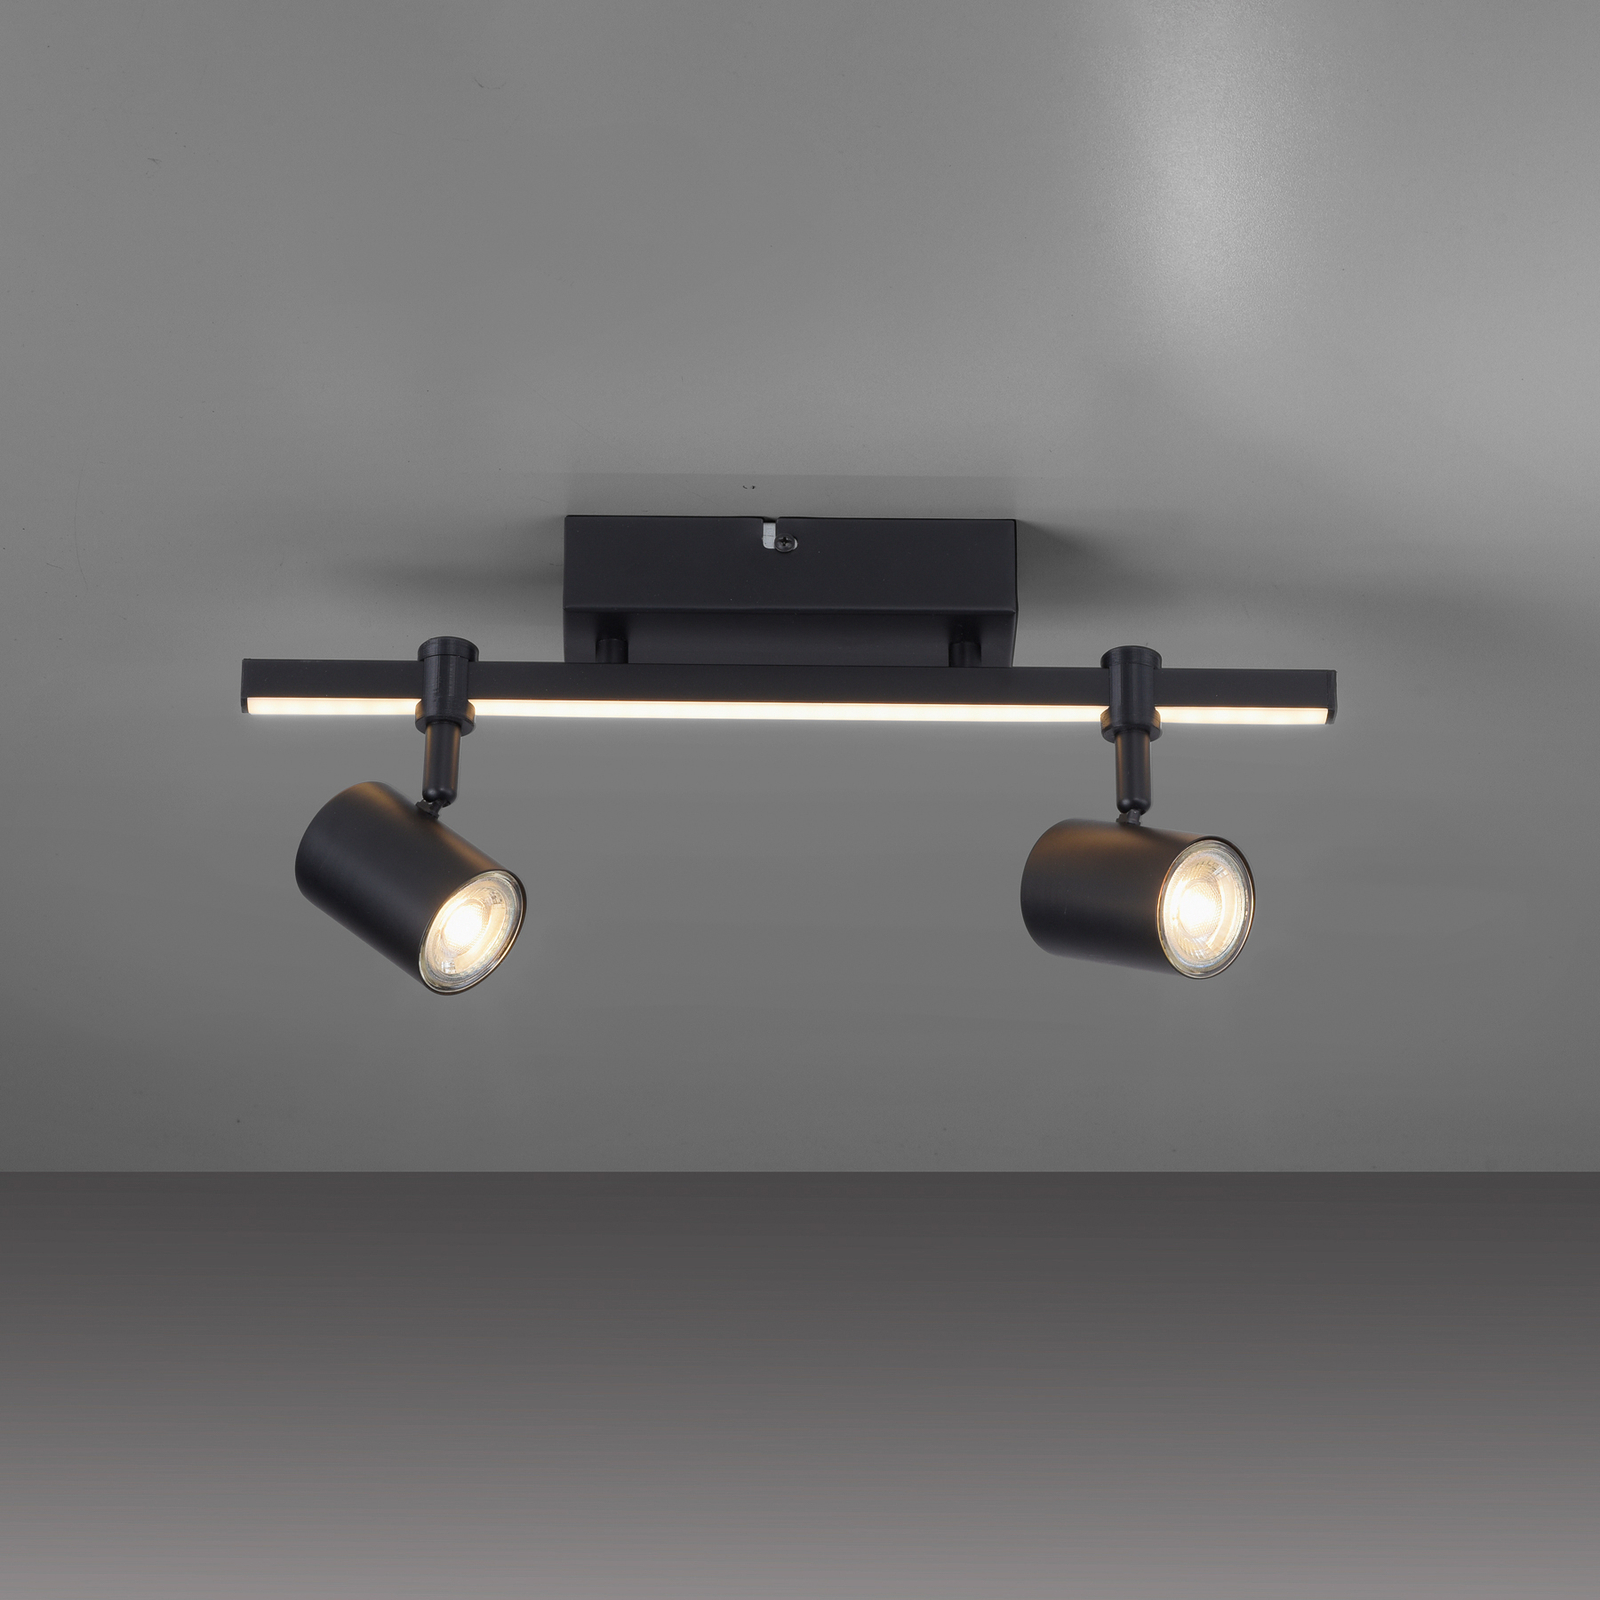 Faretto LED a soffitto Barik, nero, 2 luci